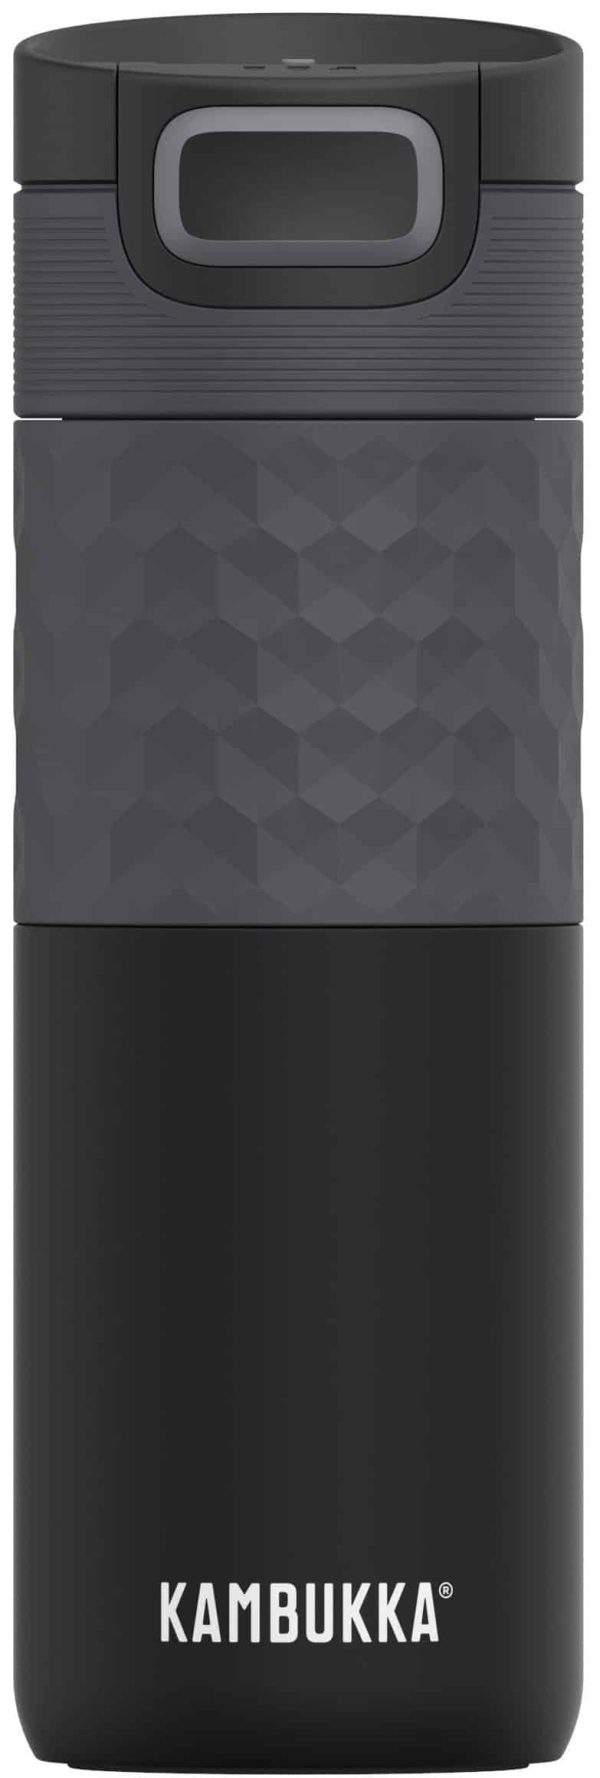 בקבוק שתיה תרמי שחור 500 מ”ל Black Steel קמבוקה￼ Kambukka Etna Grip